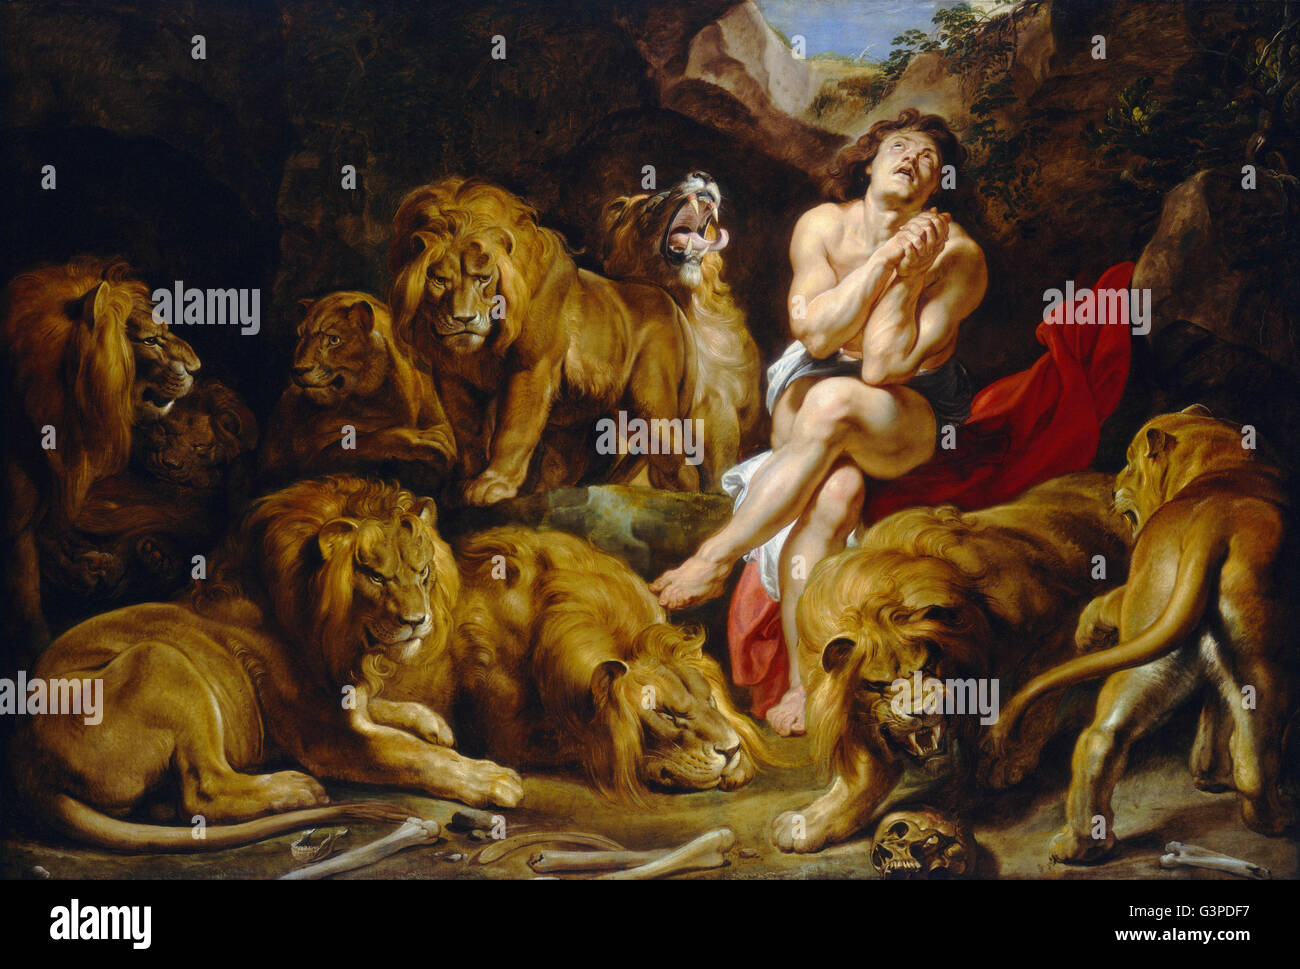 Sir Peter Paul Rubens - Daniel dans la fosse aux lions - National Gallery of Art, Washington DC Banque D'Images